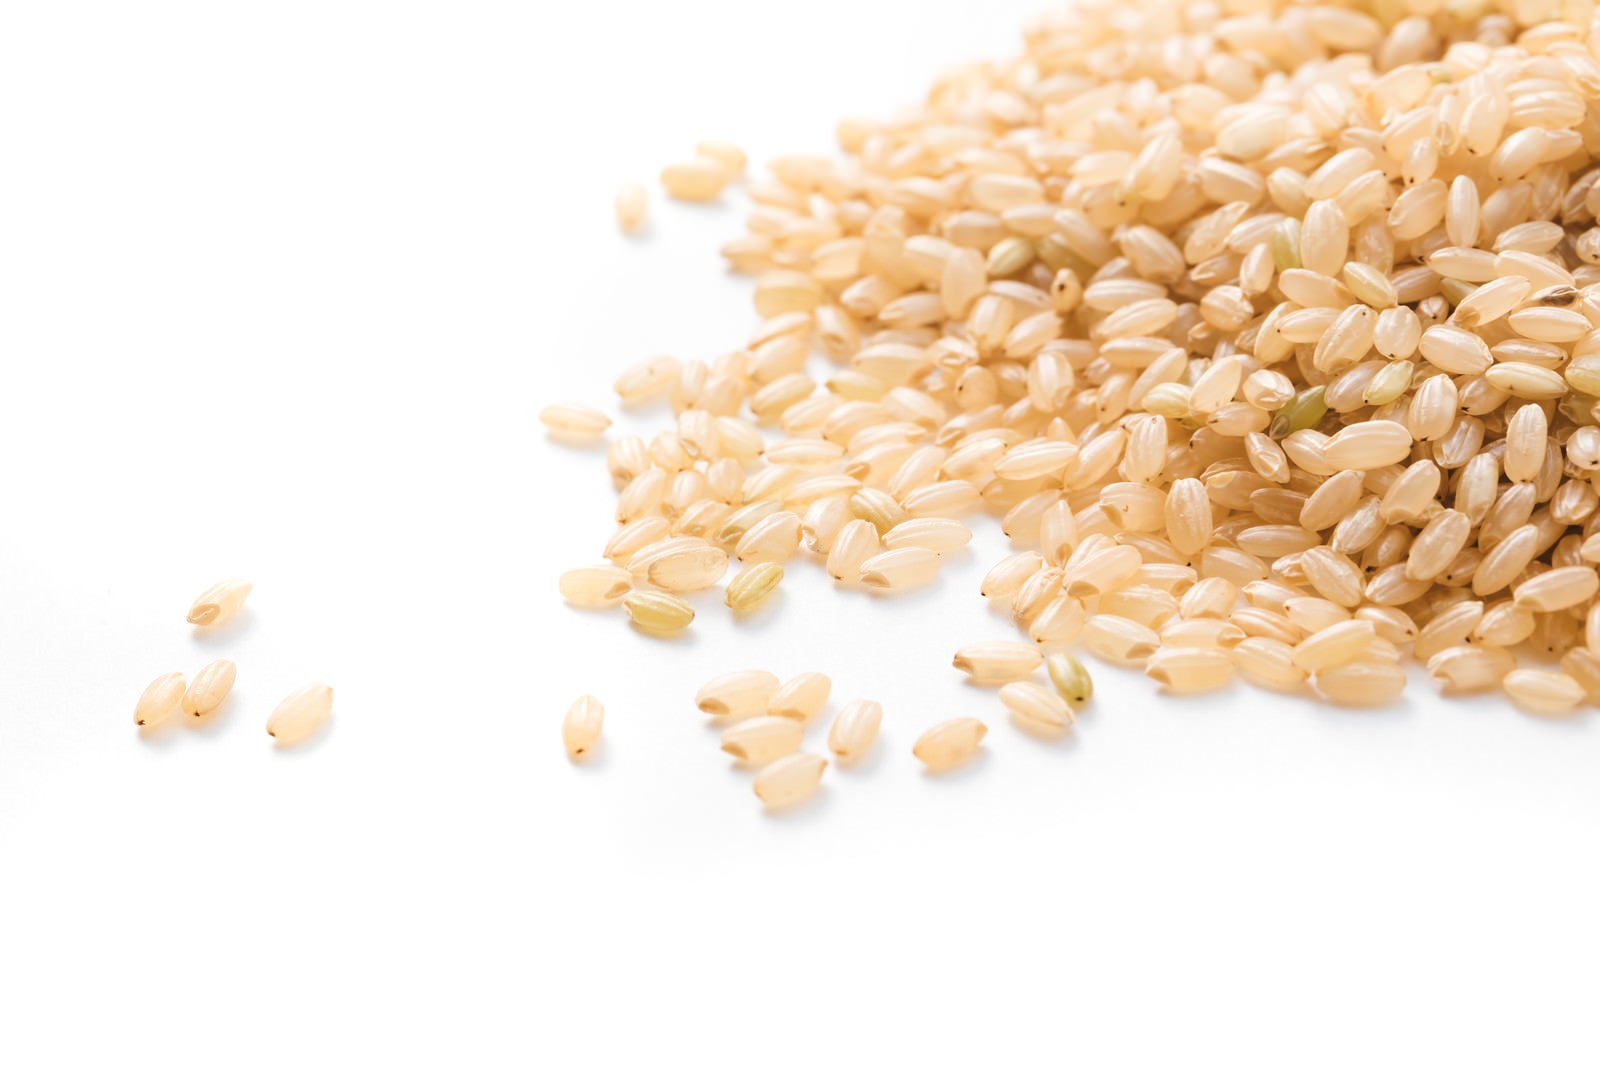 「淡褐色の玄米粒」の写真